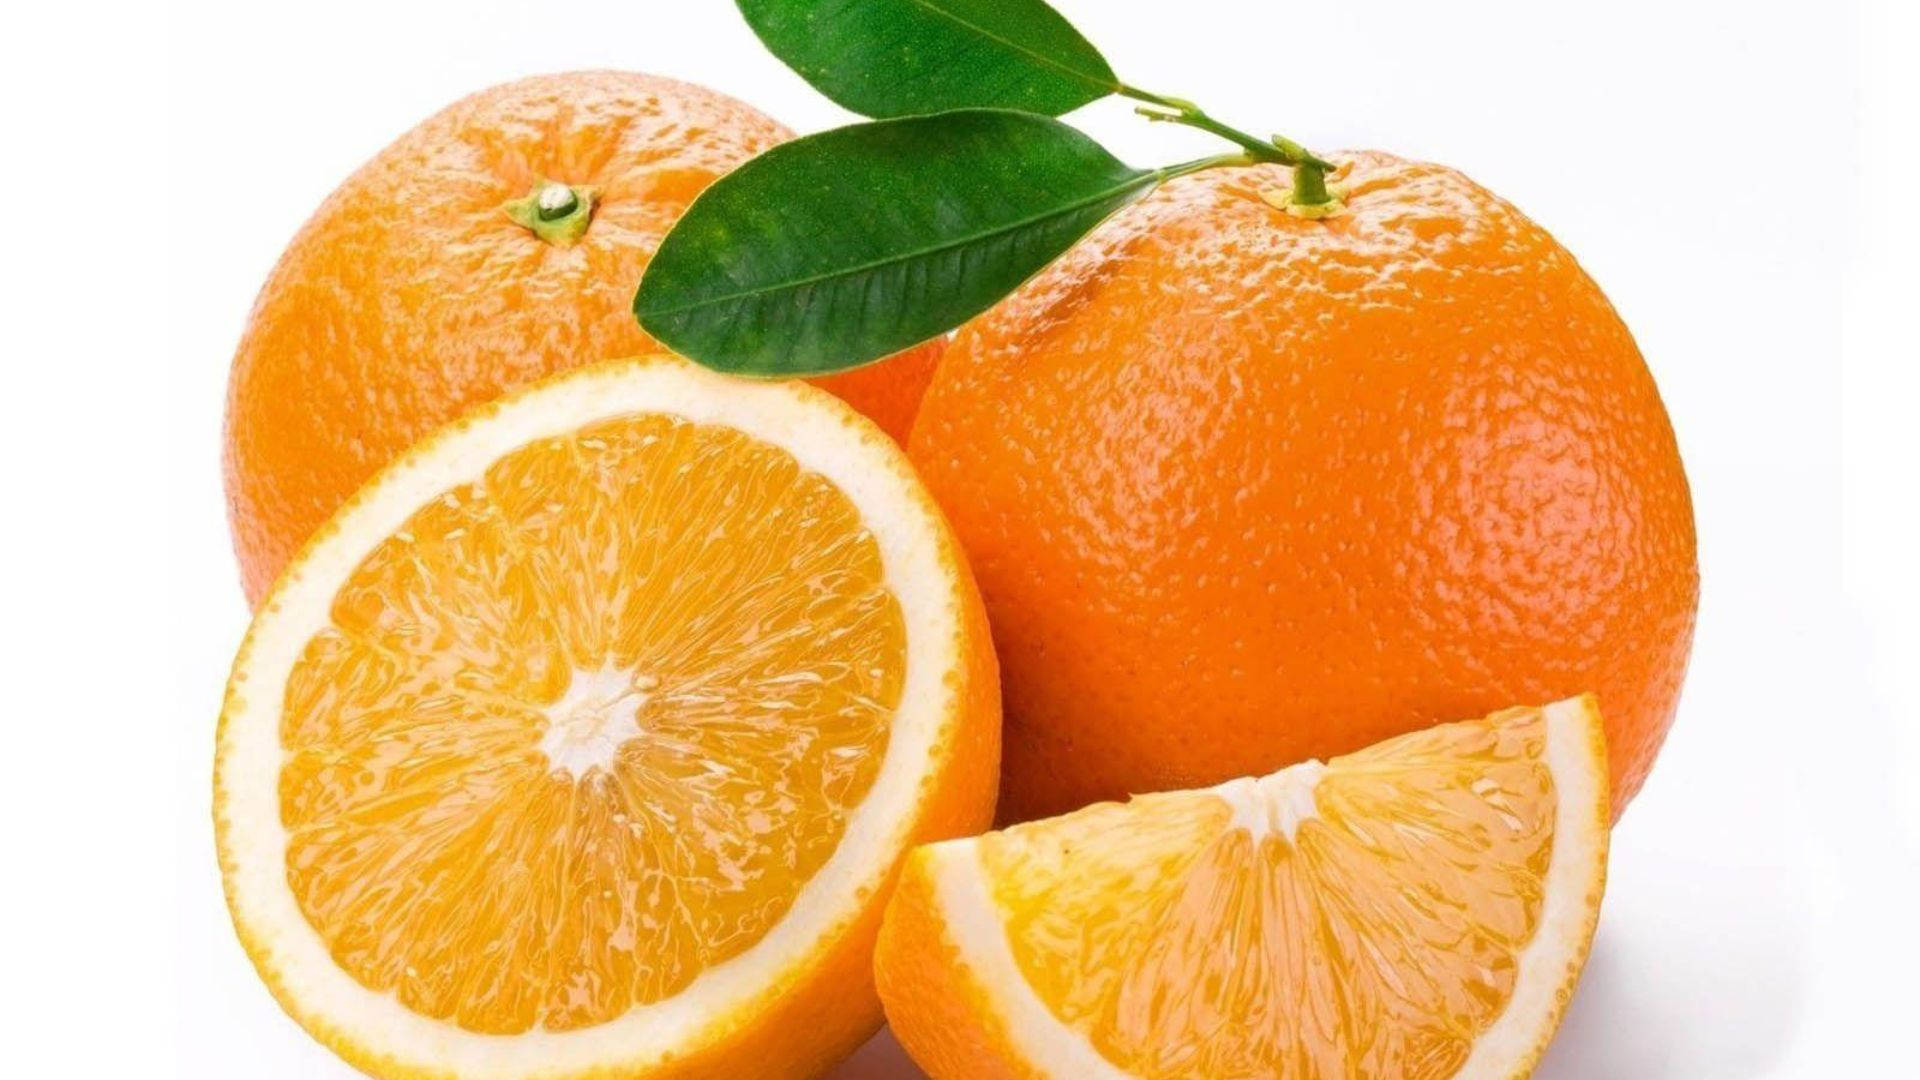 Simple Orange Fruit Background